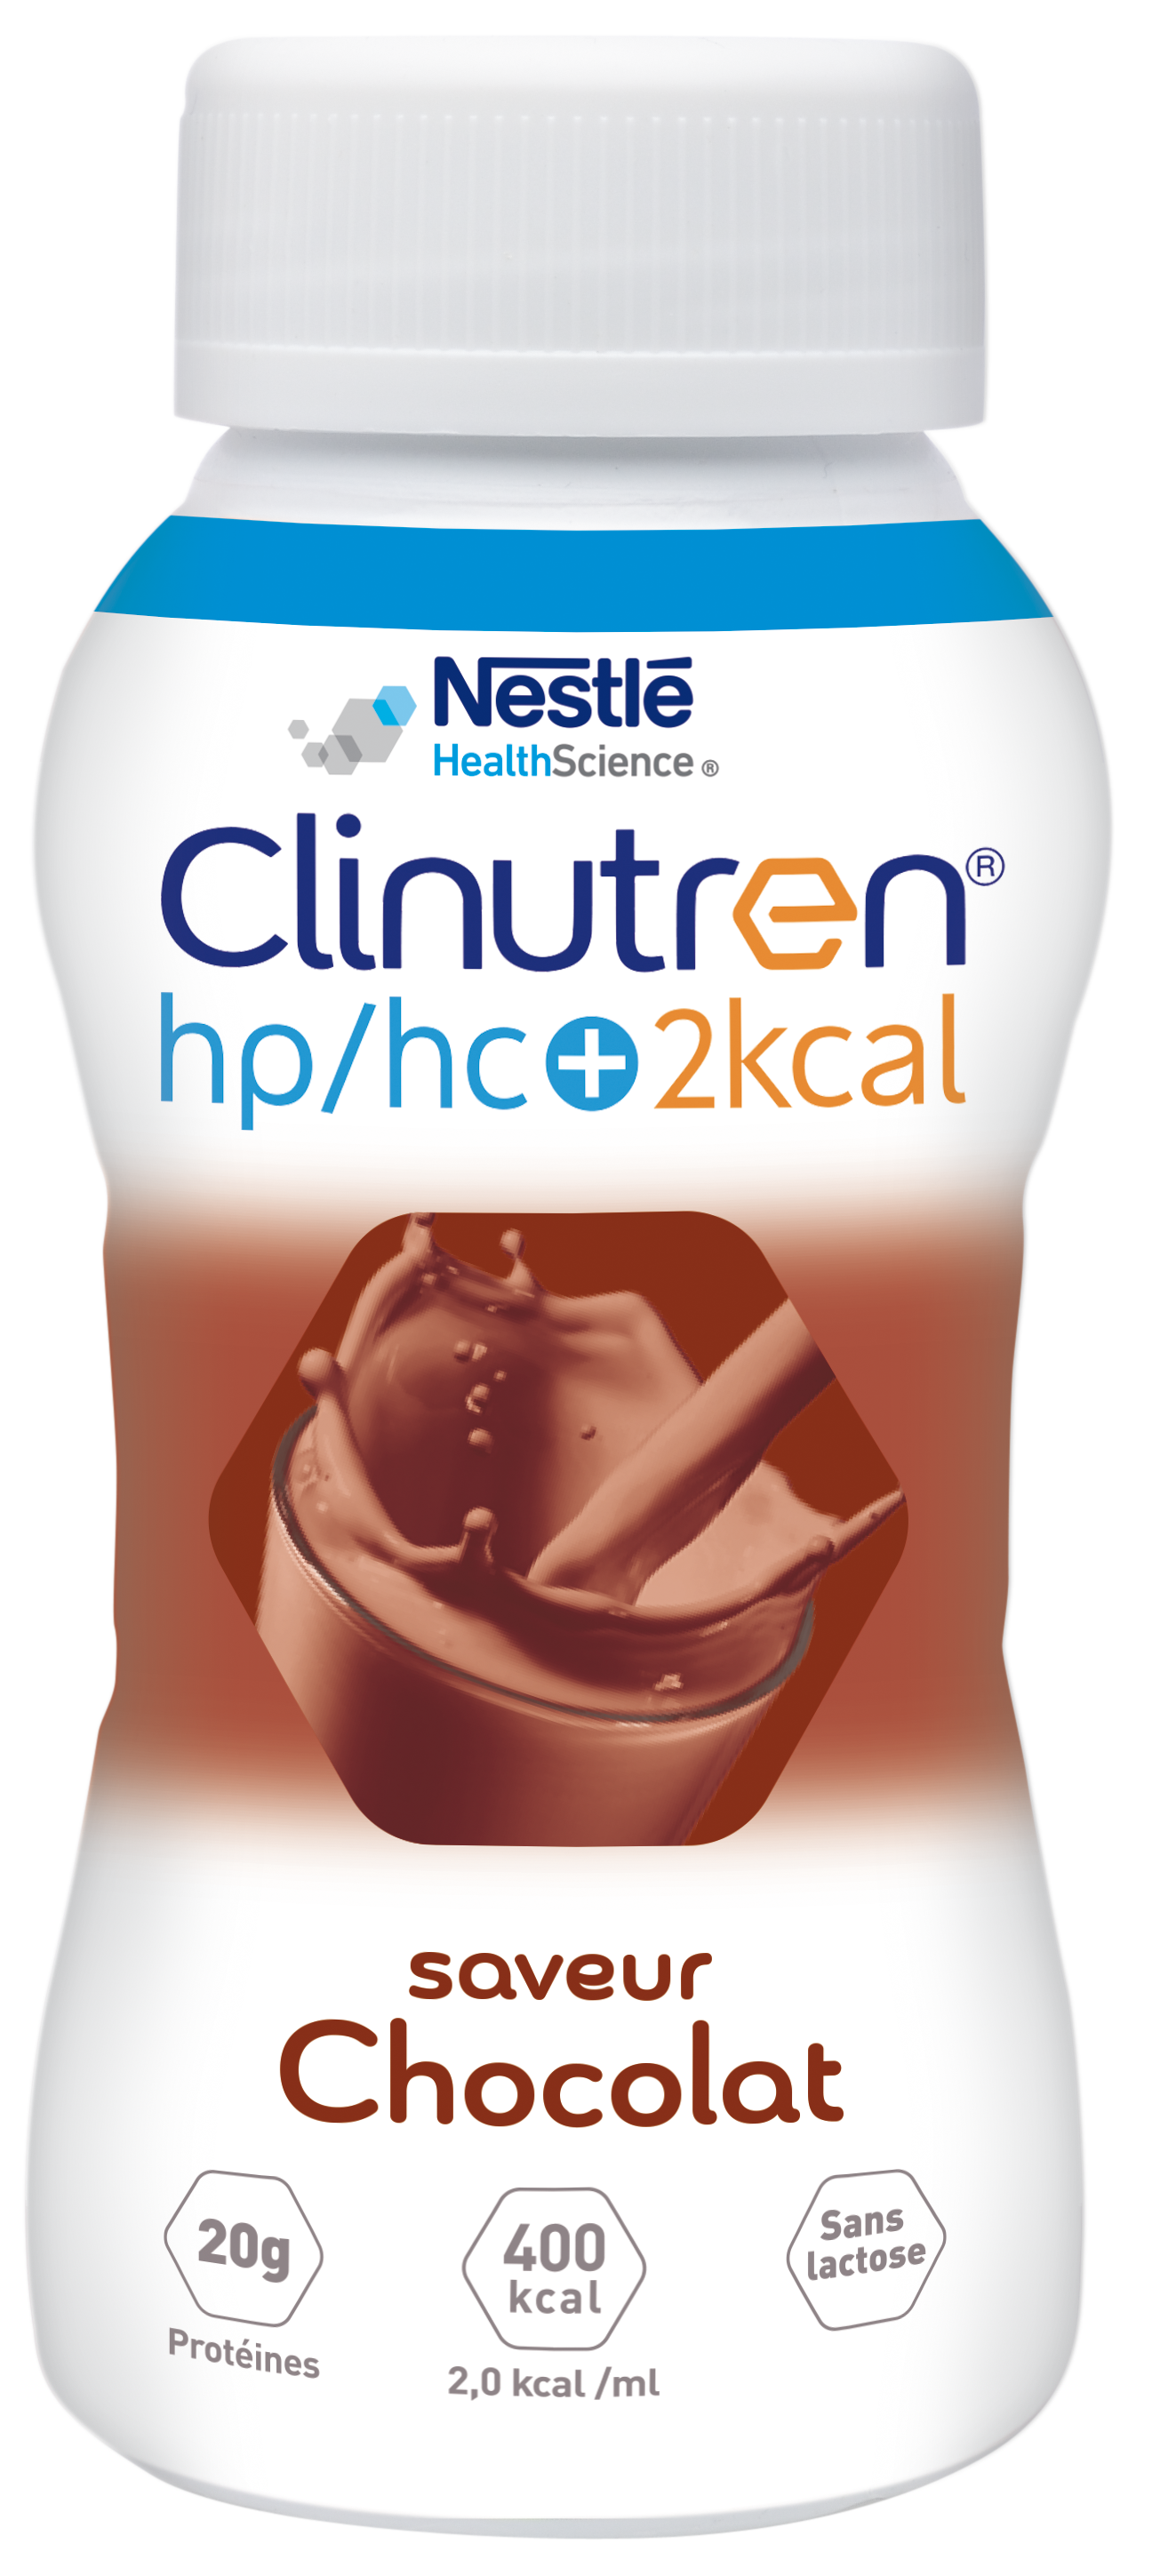 Clinutren HPHC+ 2KCAL